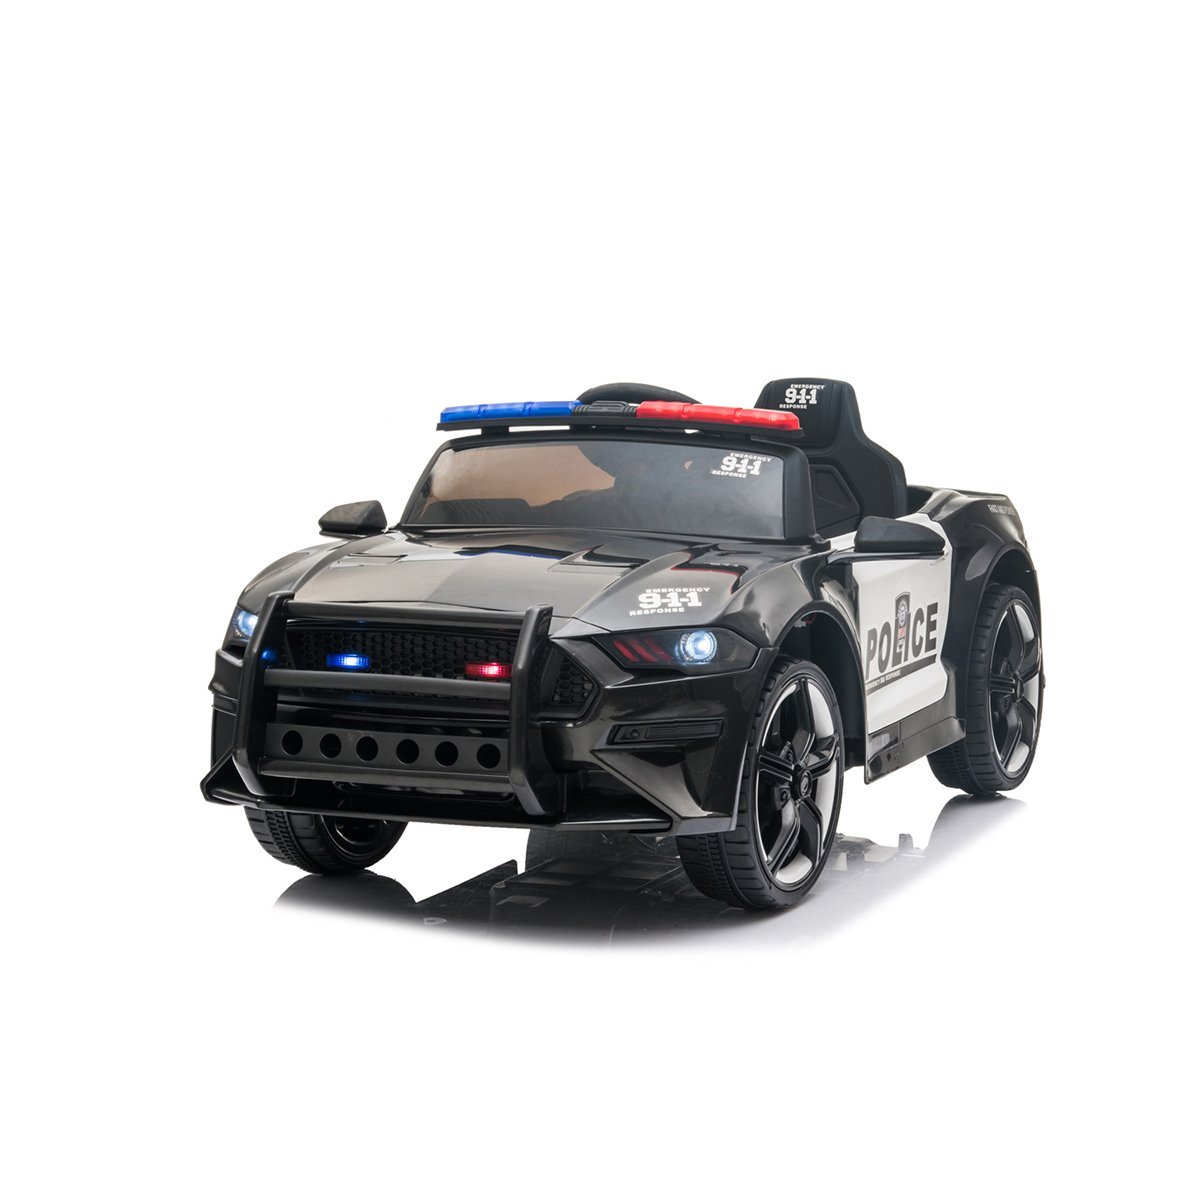 Mini Carro Elétrico Veiculo Policia Infantil Brinquedo Criança Bateria 12V - 2